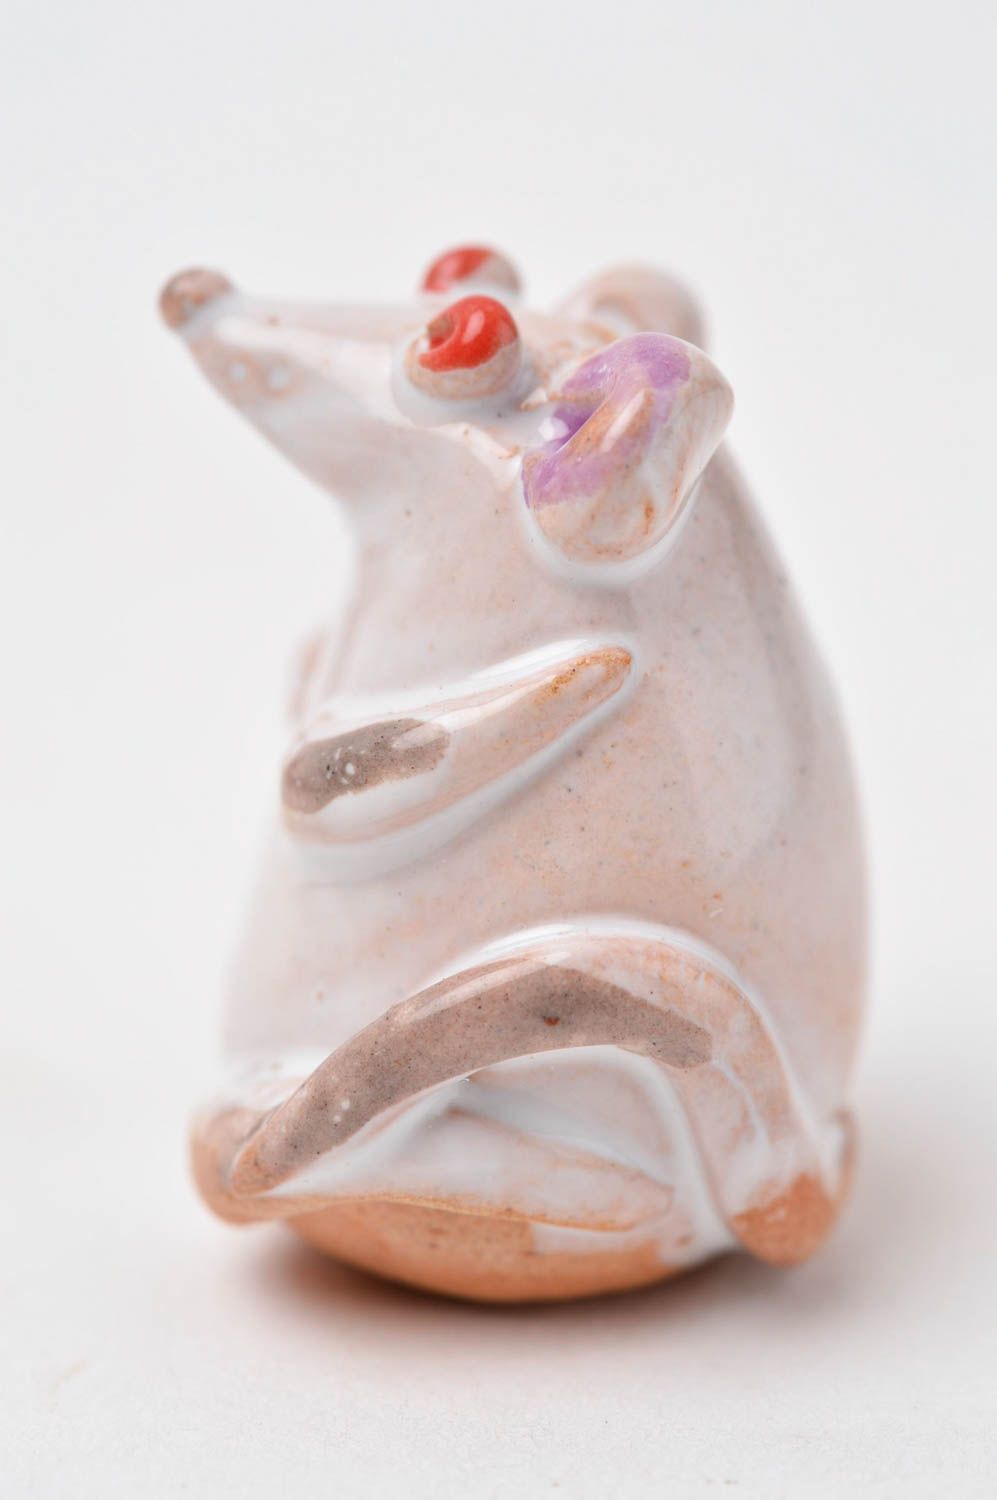 Статуэтка ручной работы глиняная статуэтка фигурка животного расписная Мышь фото 7